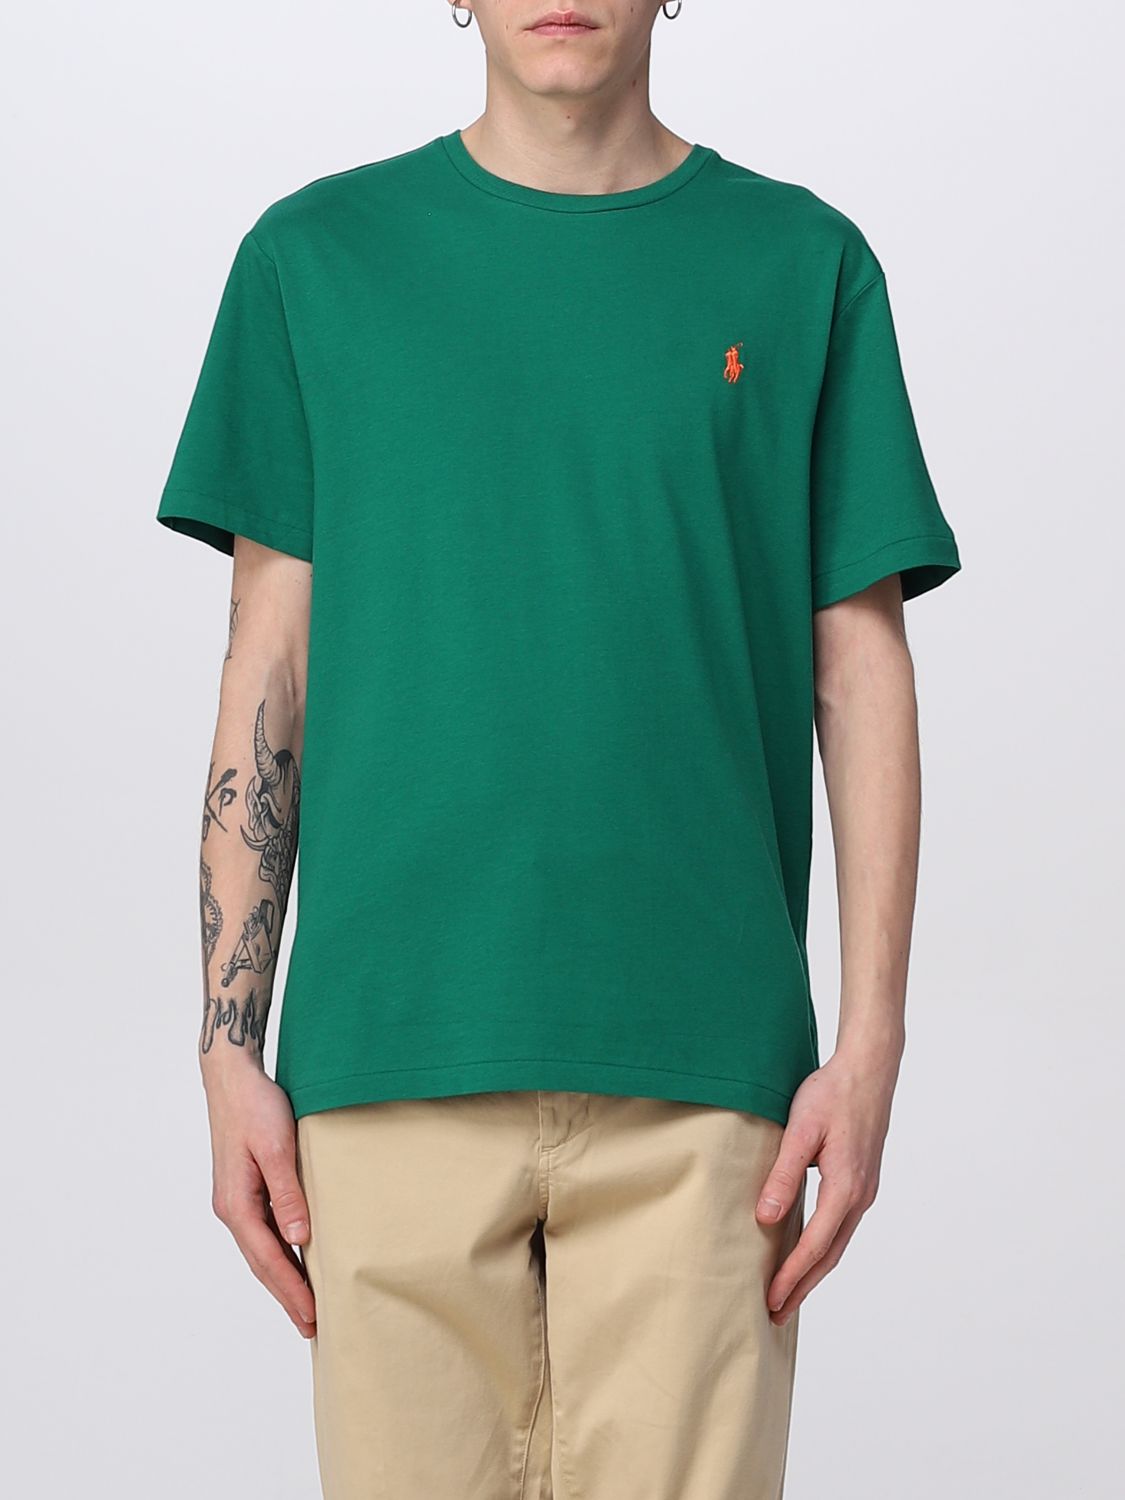 POLO RALPH LAUREN: t-shirt for man - Grass Green | Polo Ralph Lauren t ...